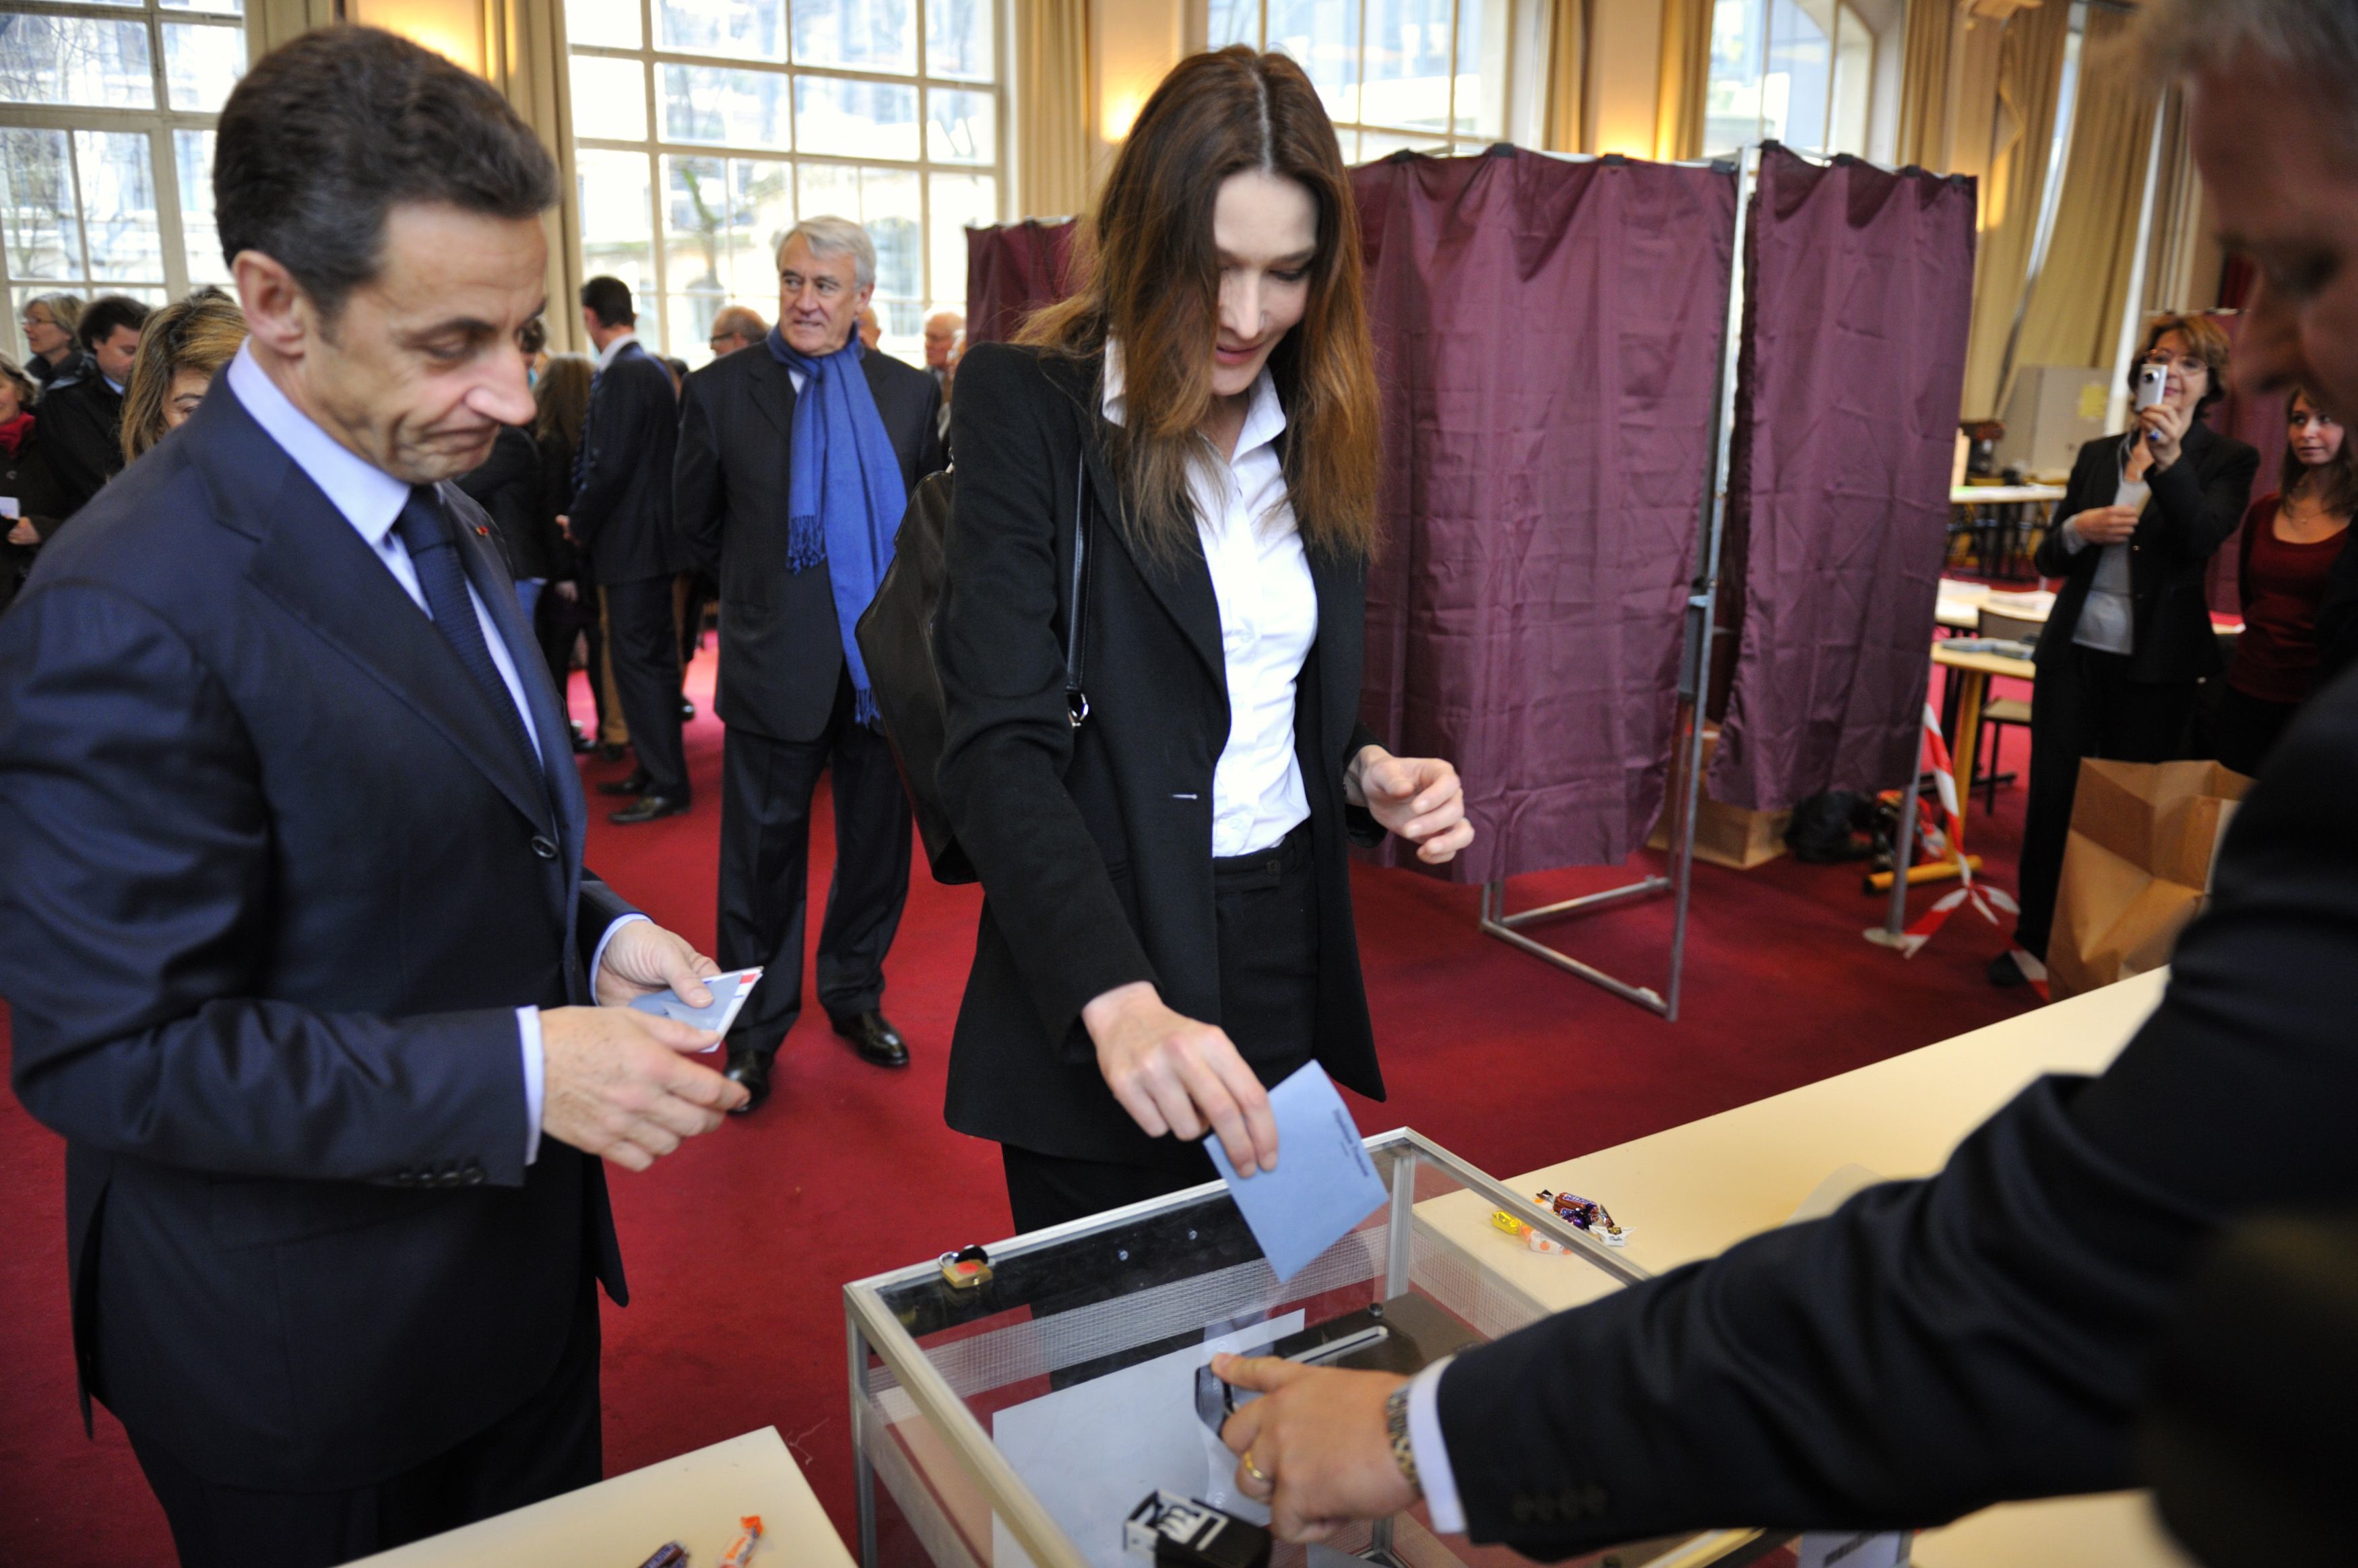 Ο Νικολά Σαρκοζί και η Κάρλα Μπρούνι ψηφίζουν. ΦΩΤΟ REUTERS